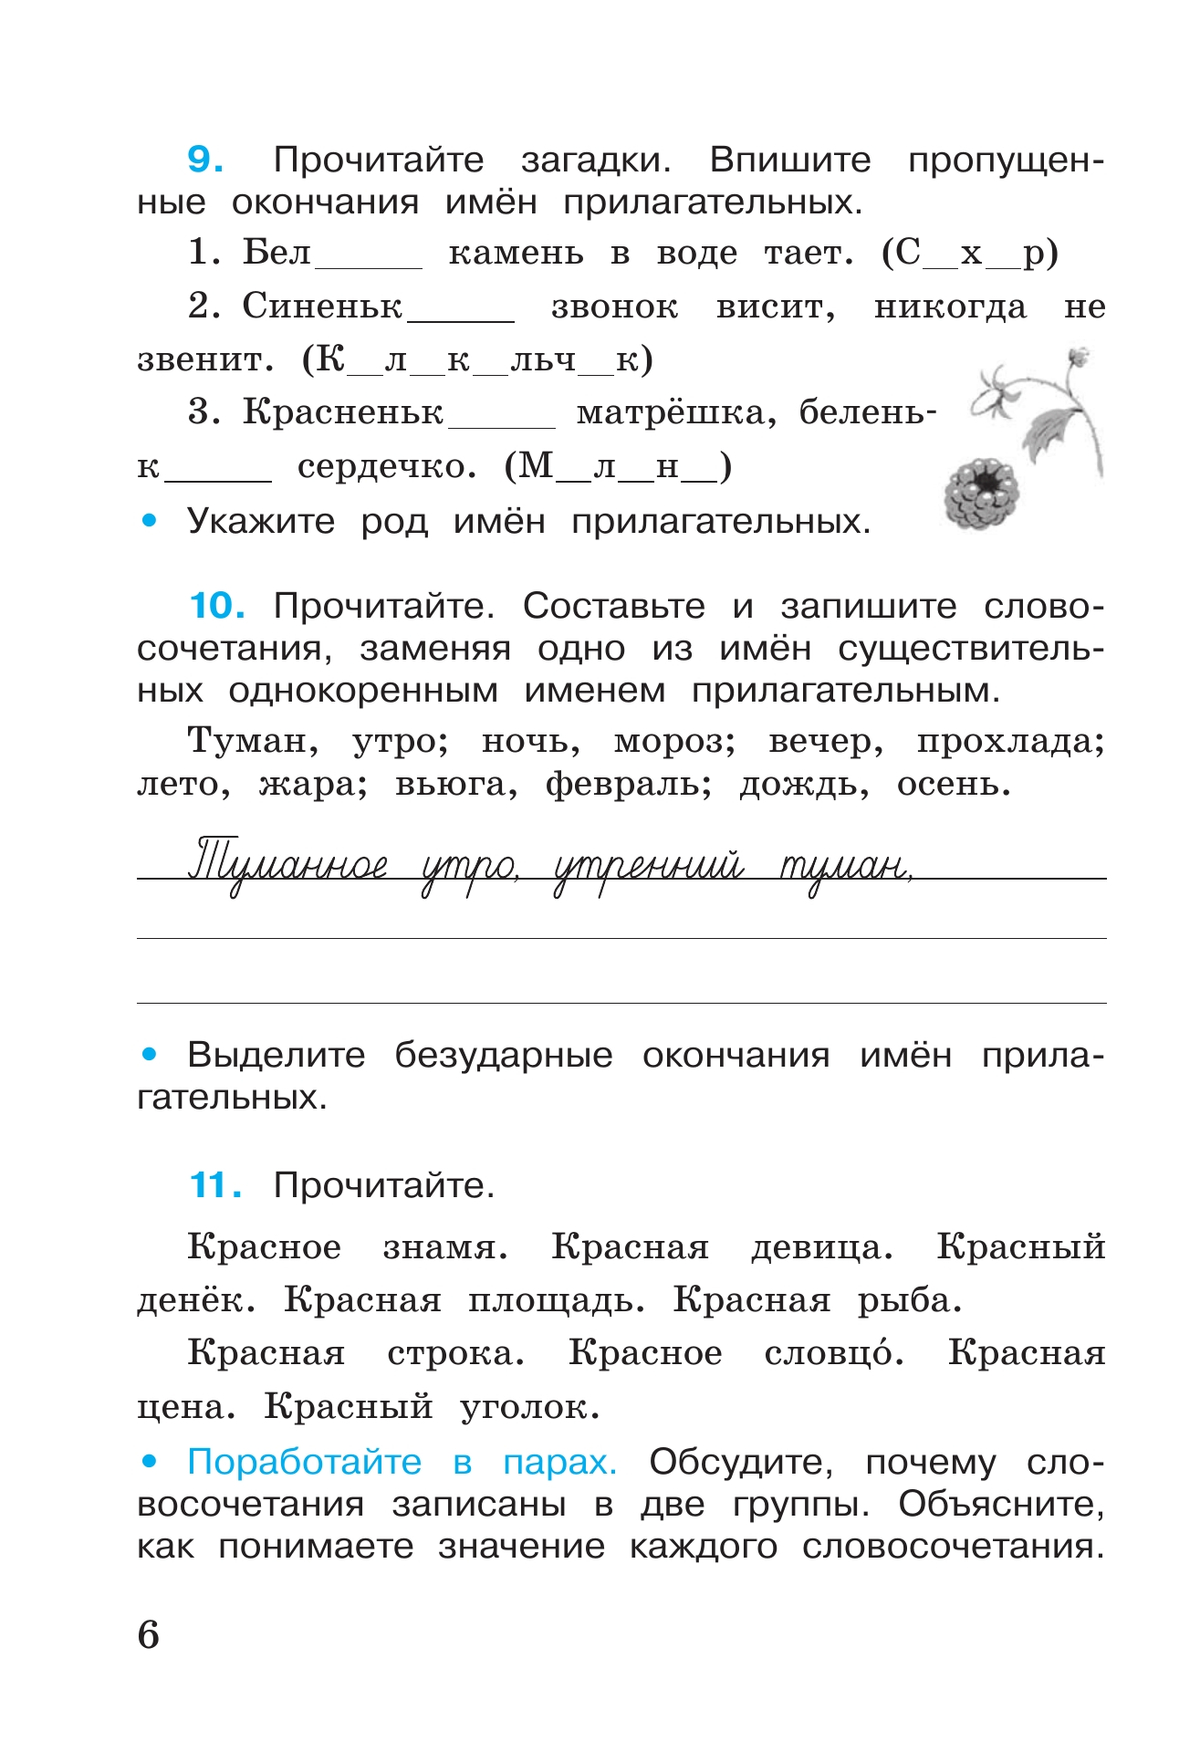 Русский язык. Рабочая тетрадь. 4 класс. В 2-х ч. Ч. 2 10